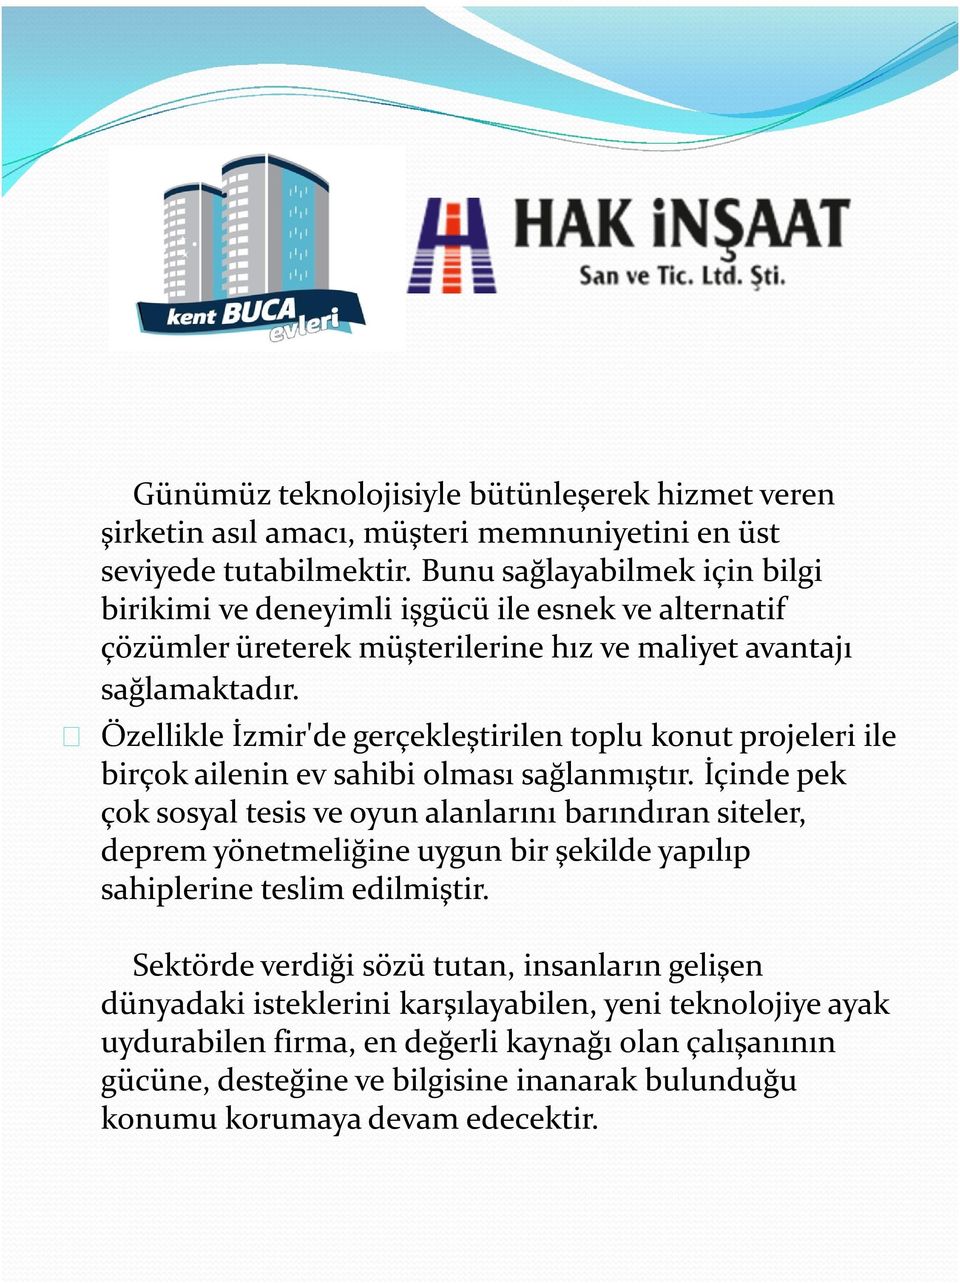 Özellikle İzmir'de gerçekleştirilen toplu konut projeleri ile birçok ailenin ev sahibi olması sağlanmıştır.